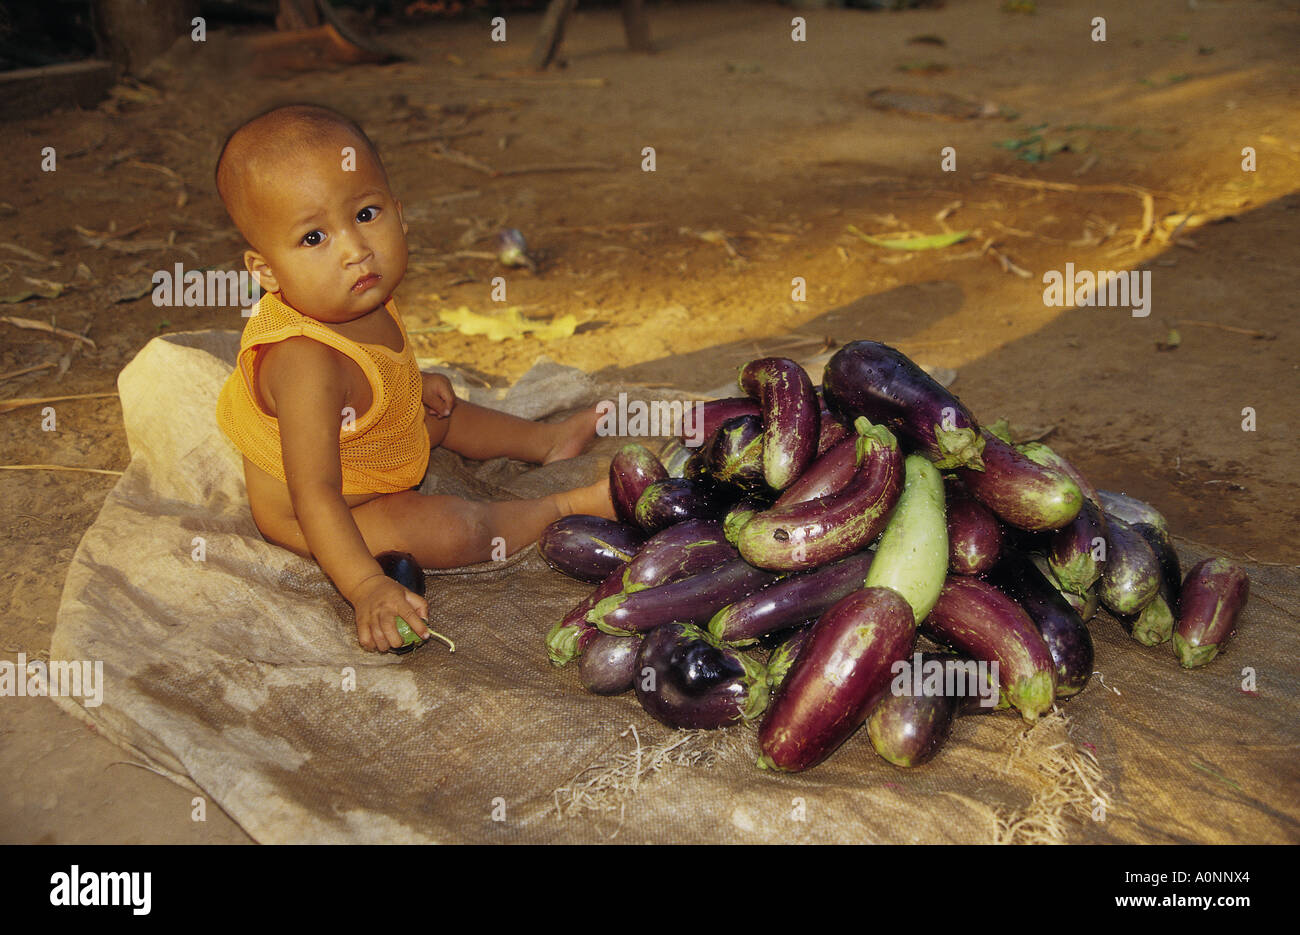 Página 8  Fotos Baby Alien, 66.000+ fotos de arquivo grátis de alta  qualidade